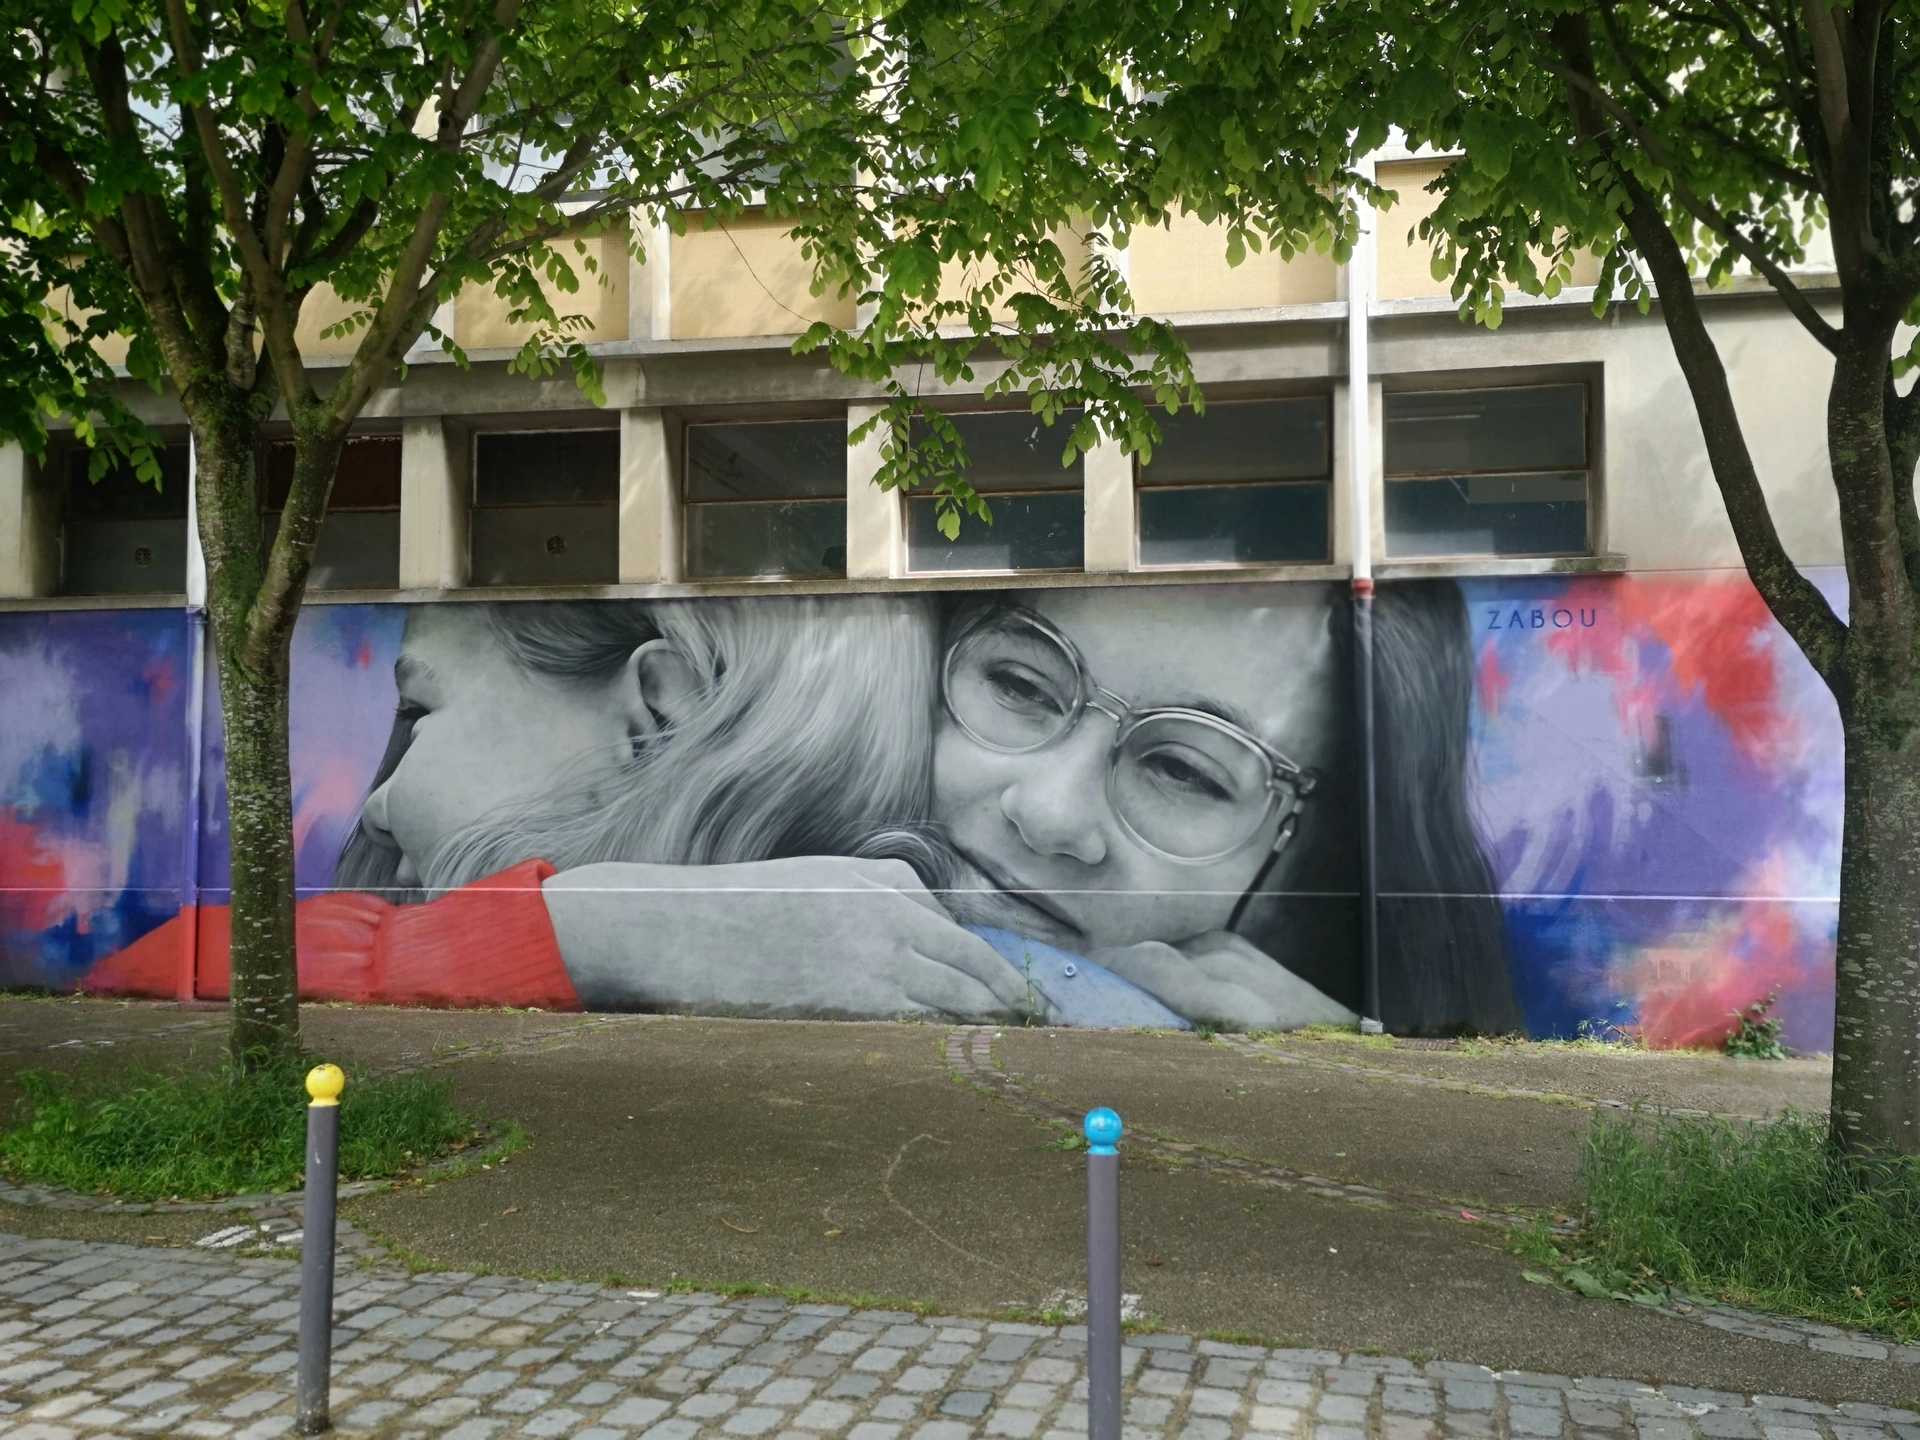 Oeuvre de Street Art réalisée par Zabou à Paris